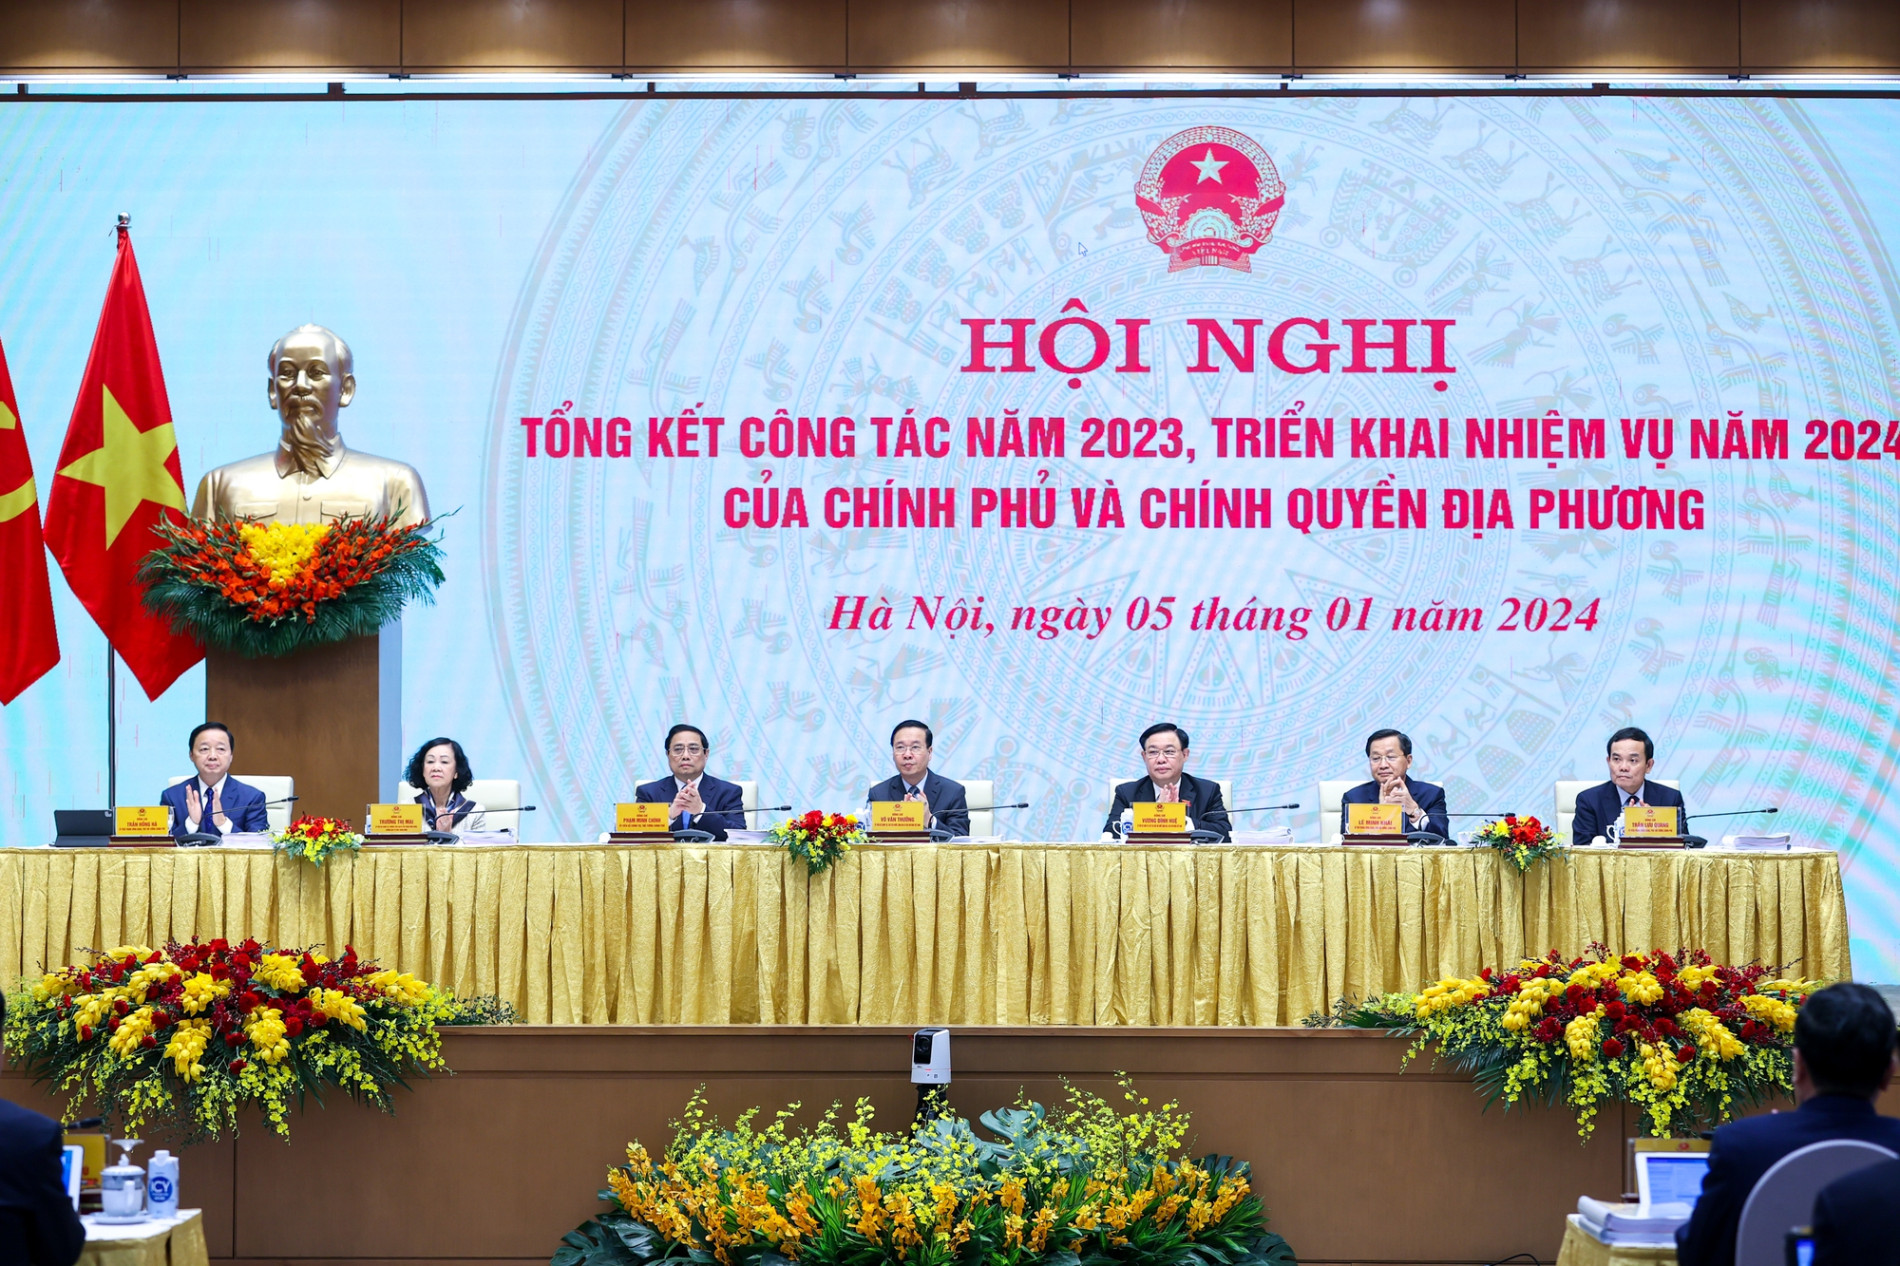 Hội nghị Chính phủ và chính quyền địa phương tổng kết công tác năm 2023, triển khai nhiệm vụ năm 2024- Ảnh 1.